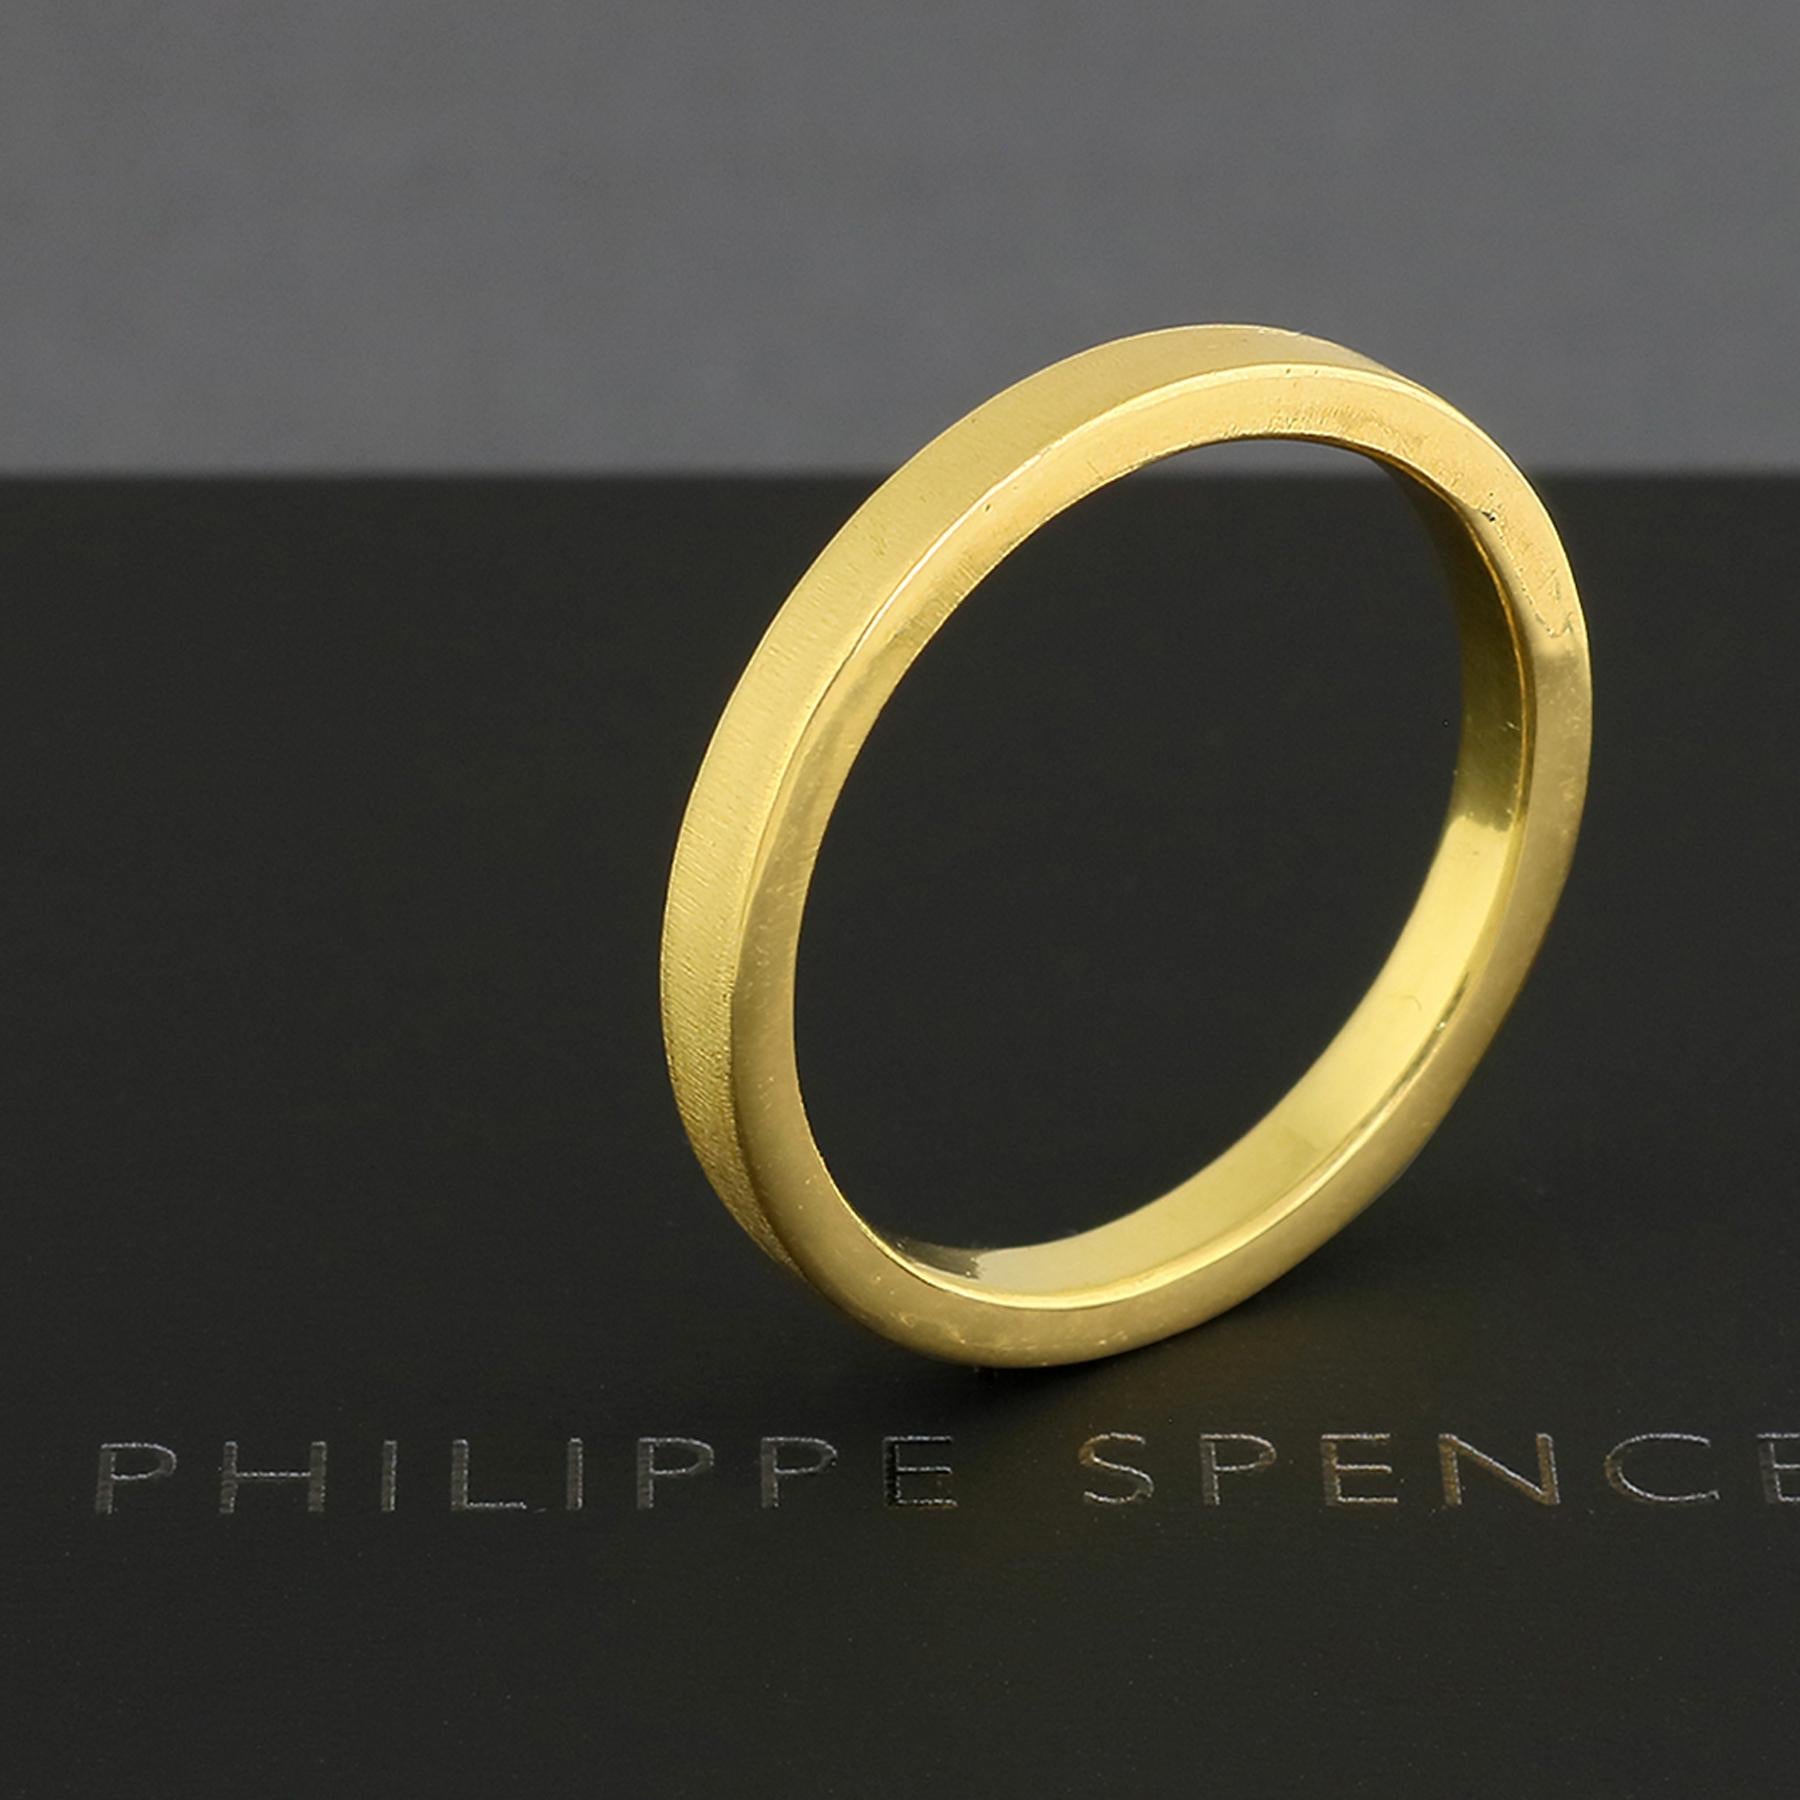 PHILIPPE-SPENCER - Bracelet en or massif 20K de 2,75 X 2mm forgé à la main et à l'enclume. Extérieur mat lourd, intérieur poli miroir.  Chacun d'eux est une œuvre d'art unique.

Cet article en stock est une taille 10, et prêt à être expédié.